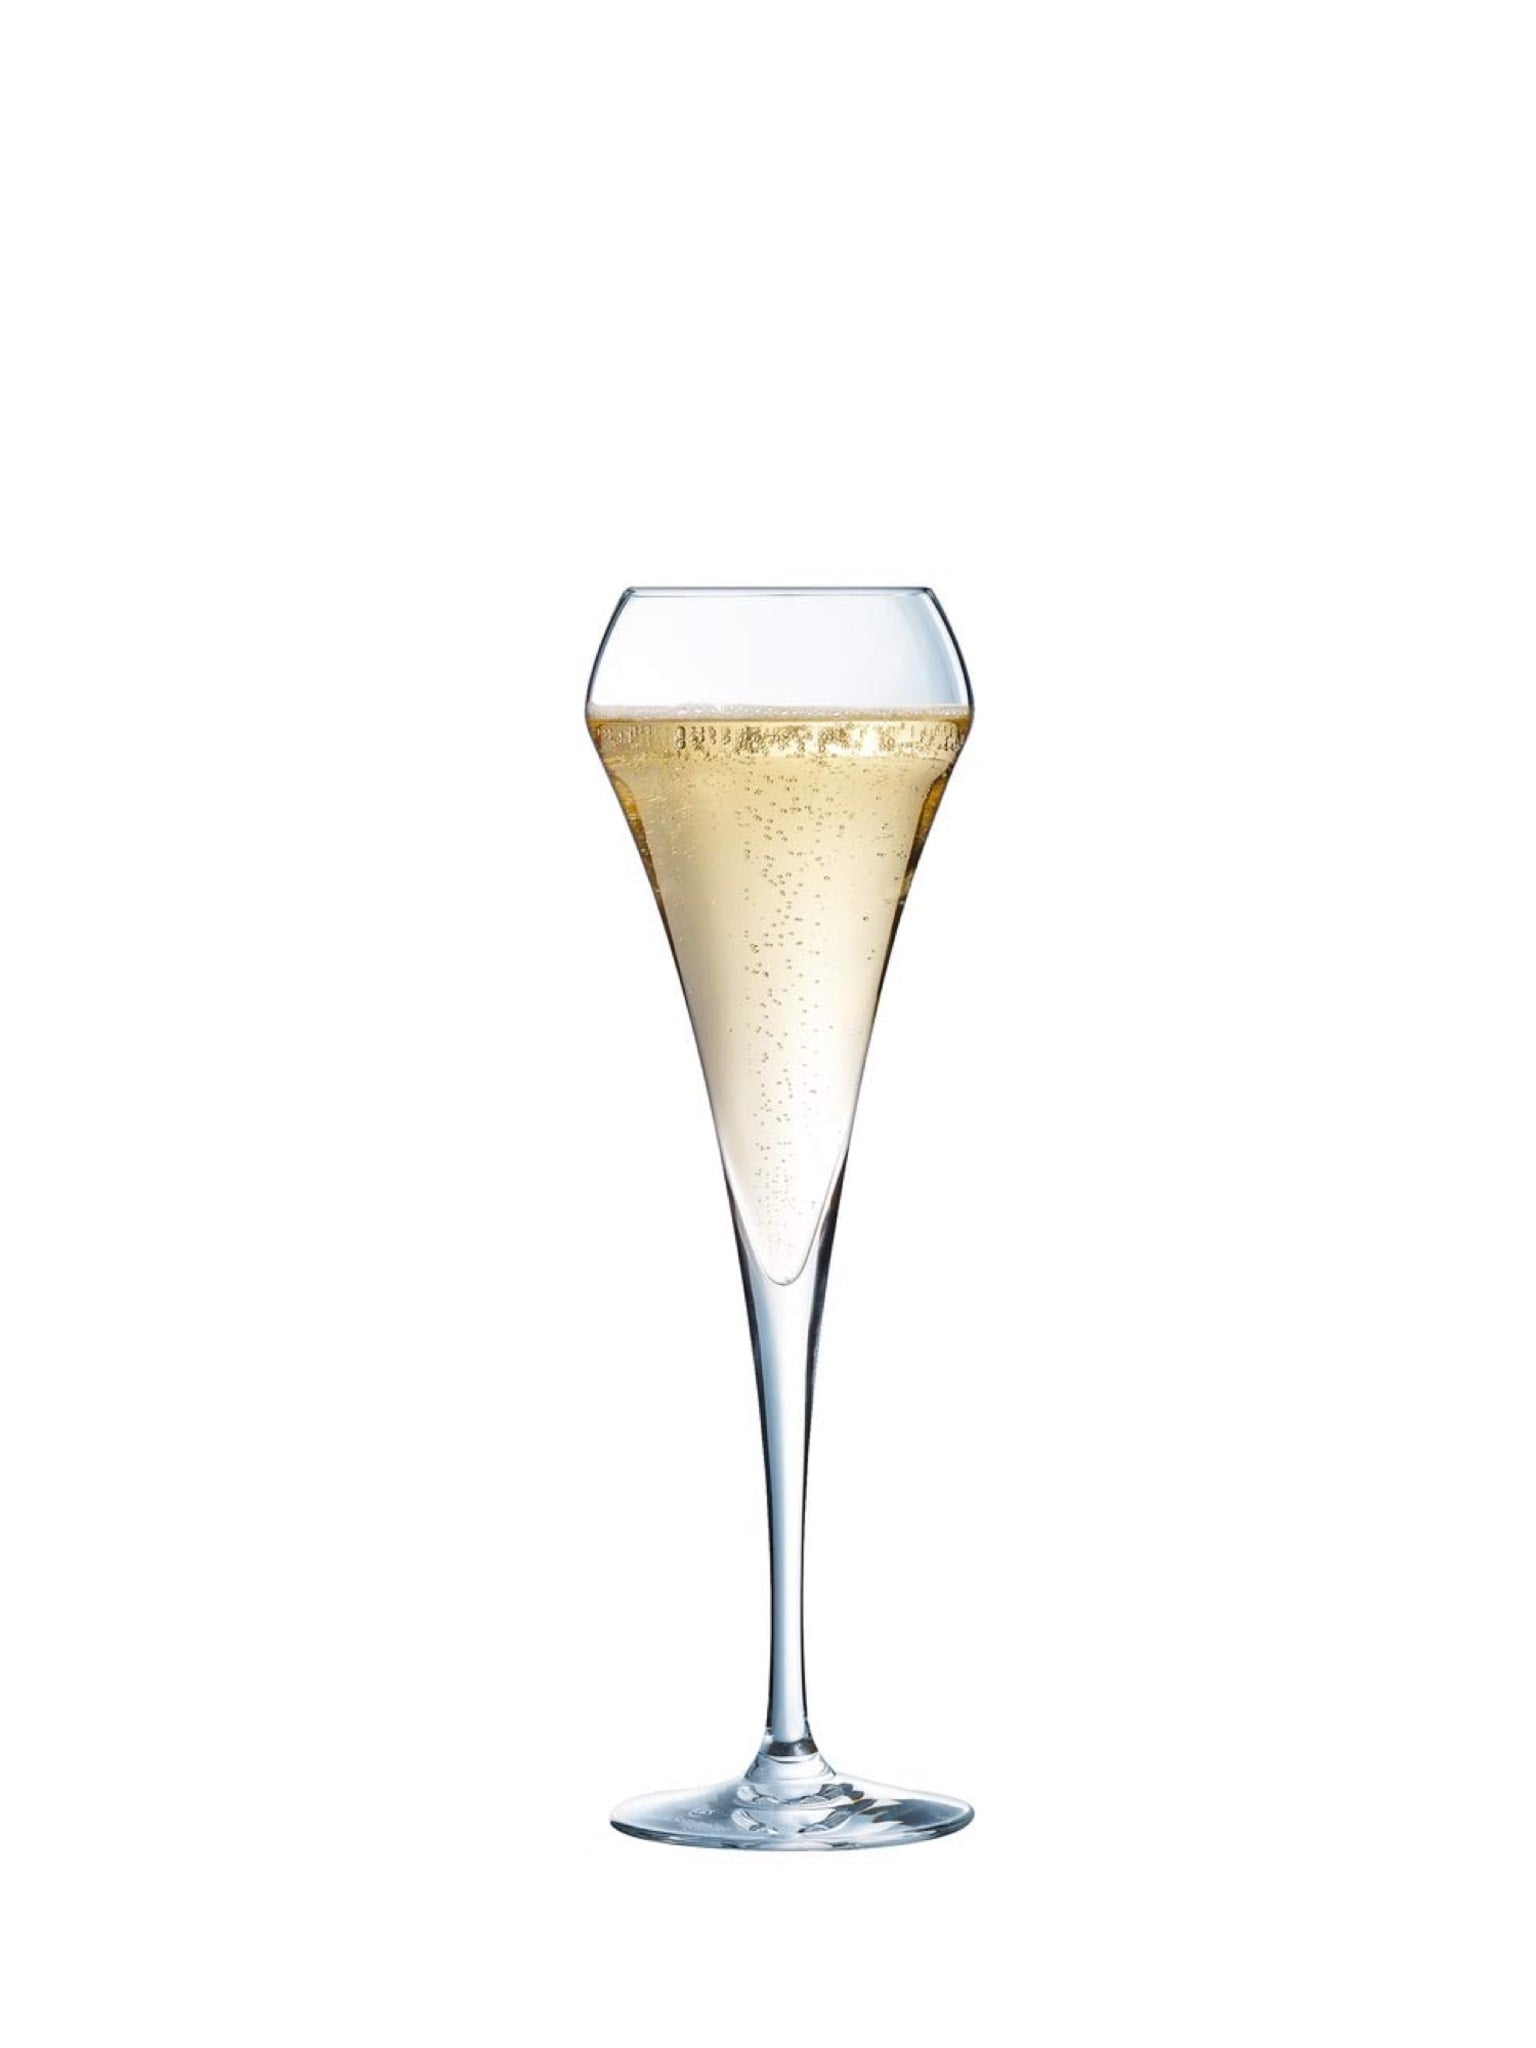 Nyd din champagne i dette smukke 20 cl Open Up champagneglas